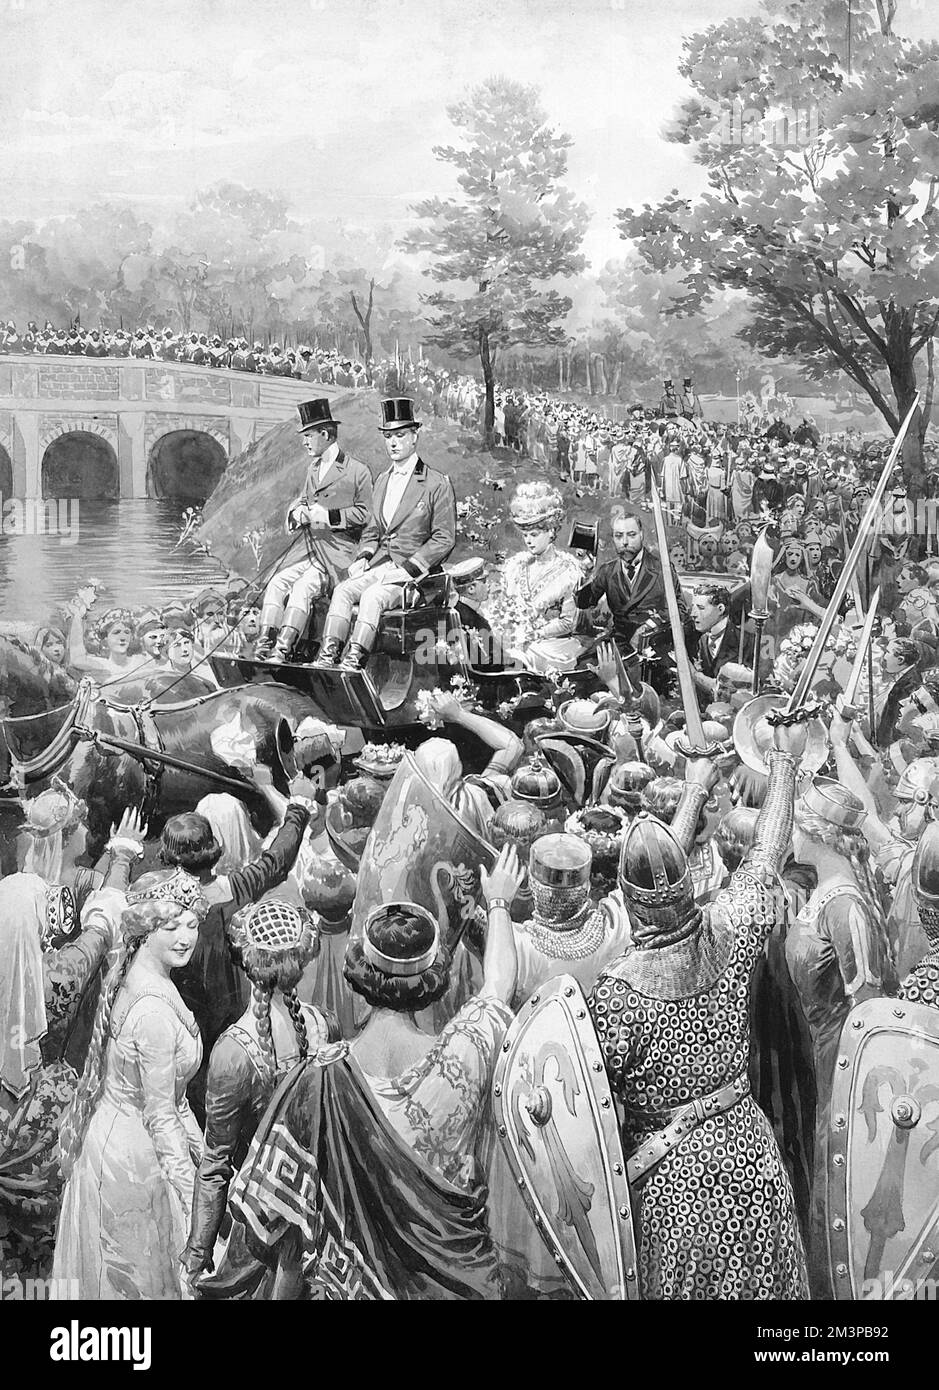 König George V und Königin Mary in einer Kutsche an einem Fluss, von Zuschauern in mittelalterlichen Kostümen begrüßt. Datum: 1911 Stockfoto